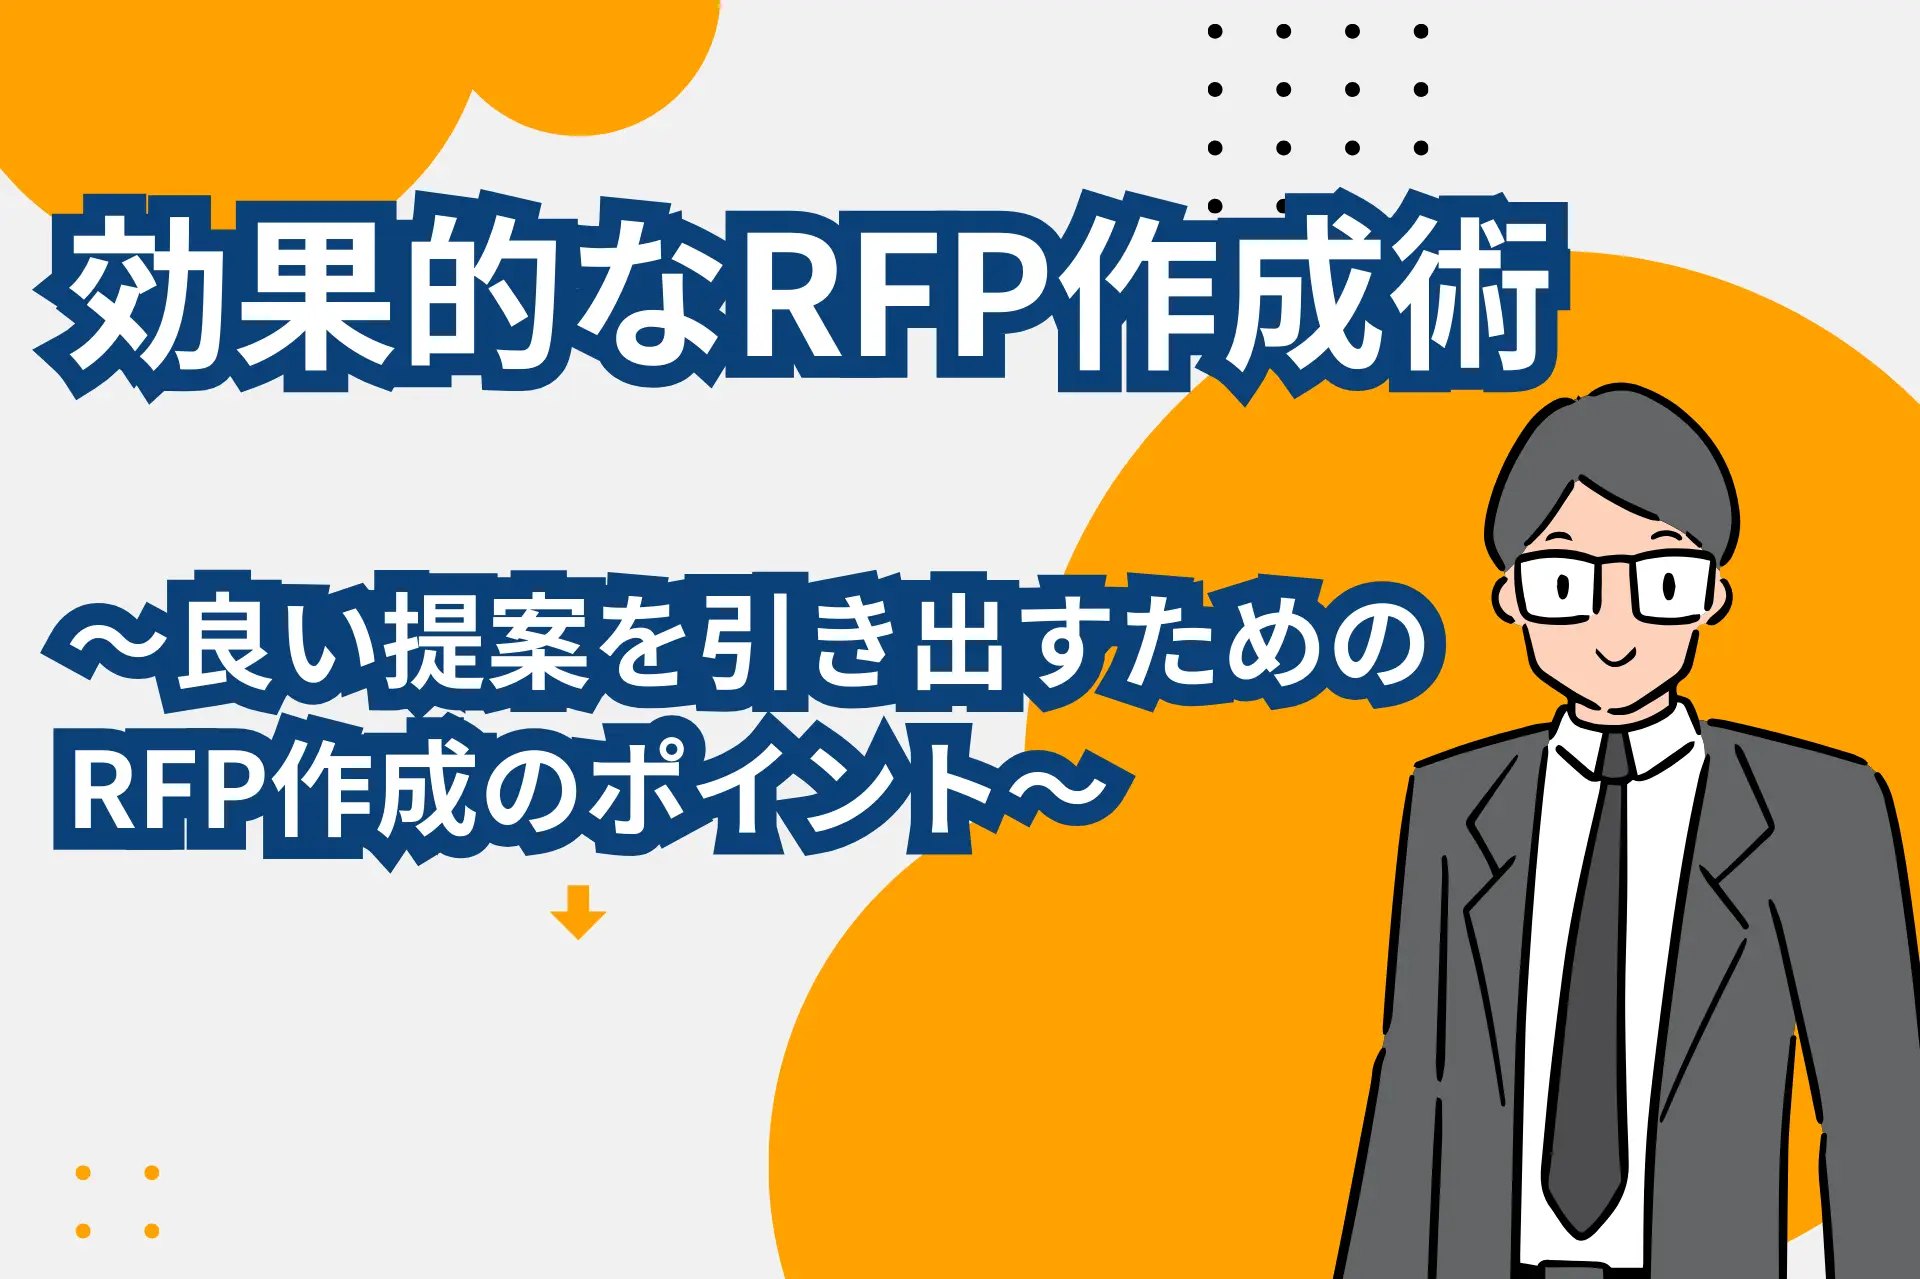 効果的なRFP作成術～良い提案を引き出すためのRFP作成のポイント～